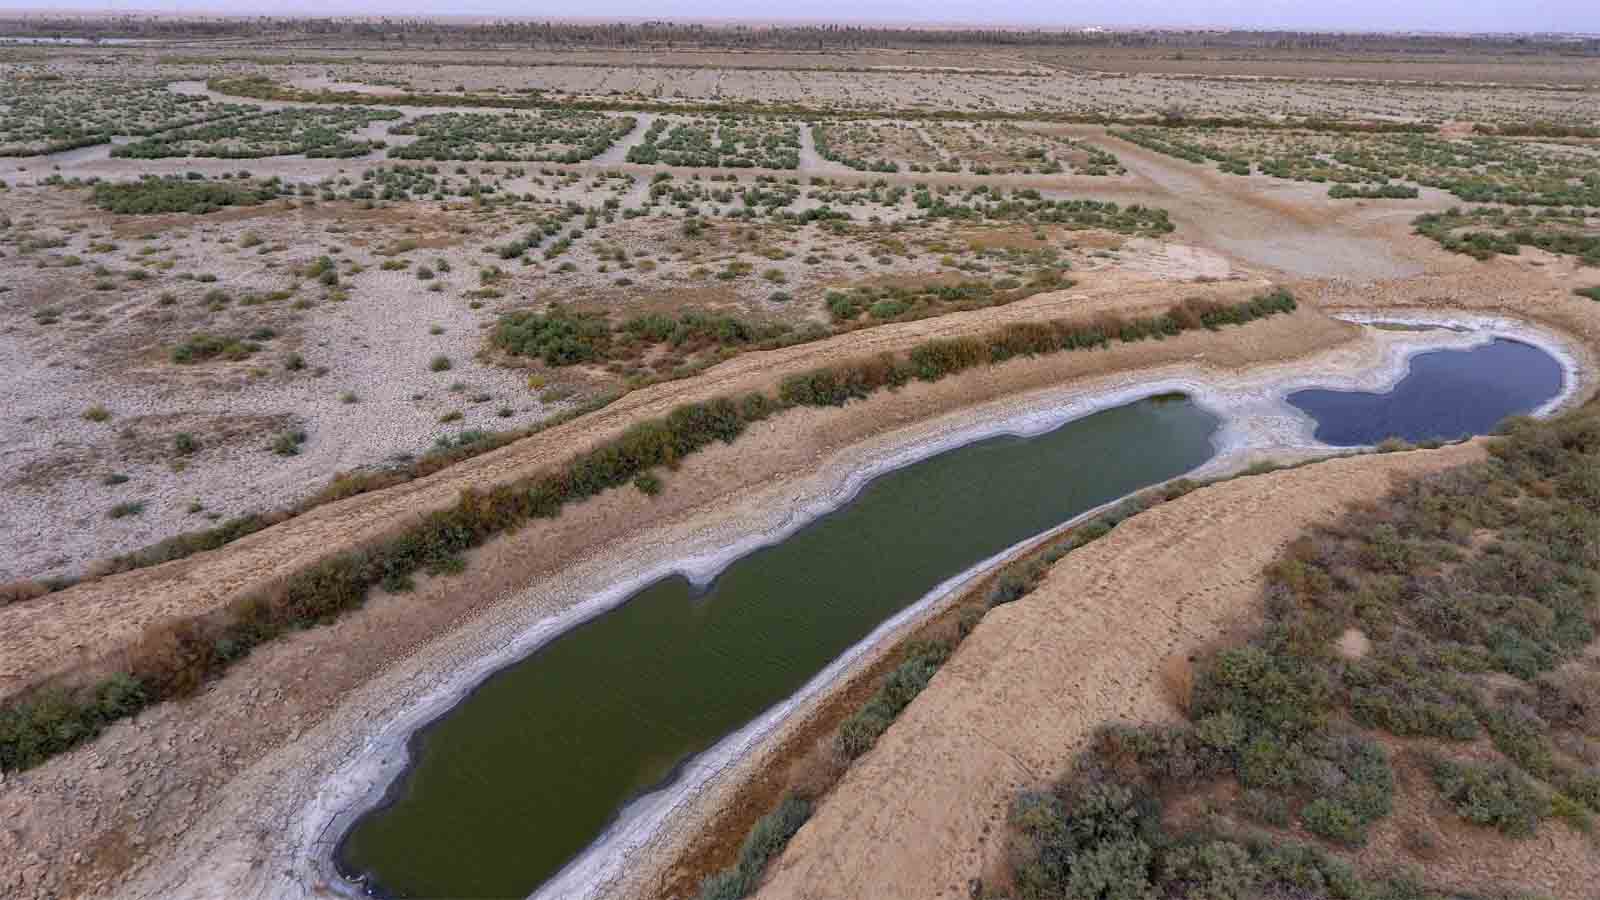 תעלת מים יבשה באזור בצרה בדרום עיראק. 28 ביולי 2018 (AP Photo/Nabil al-Jurani)